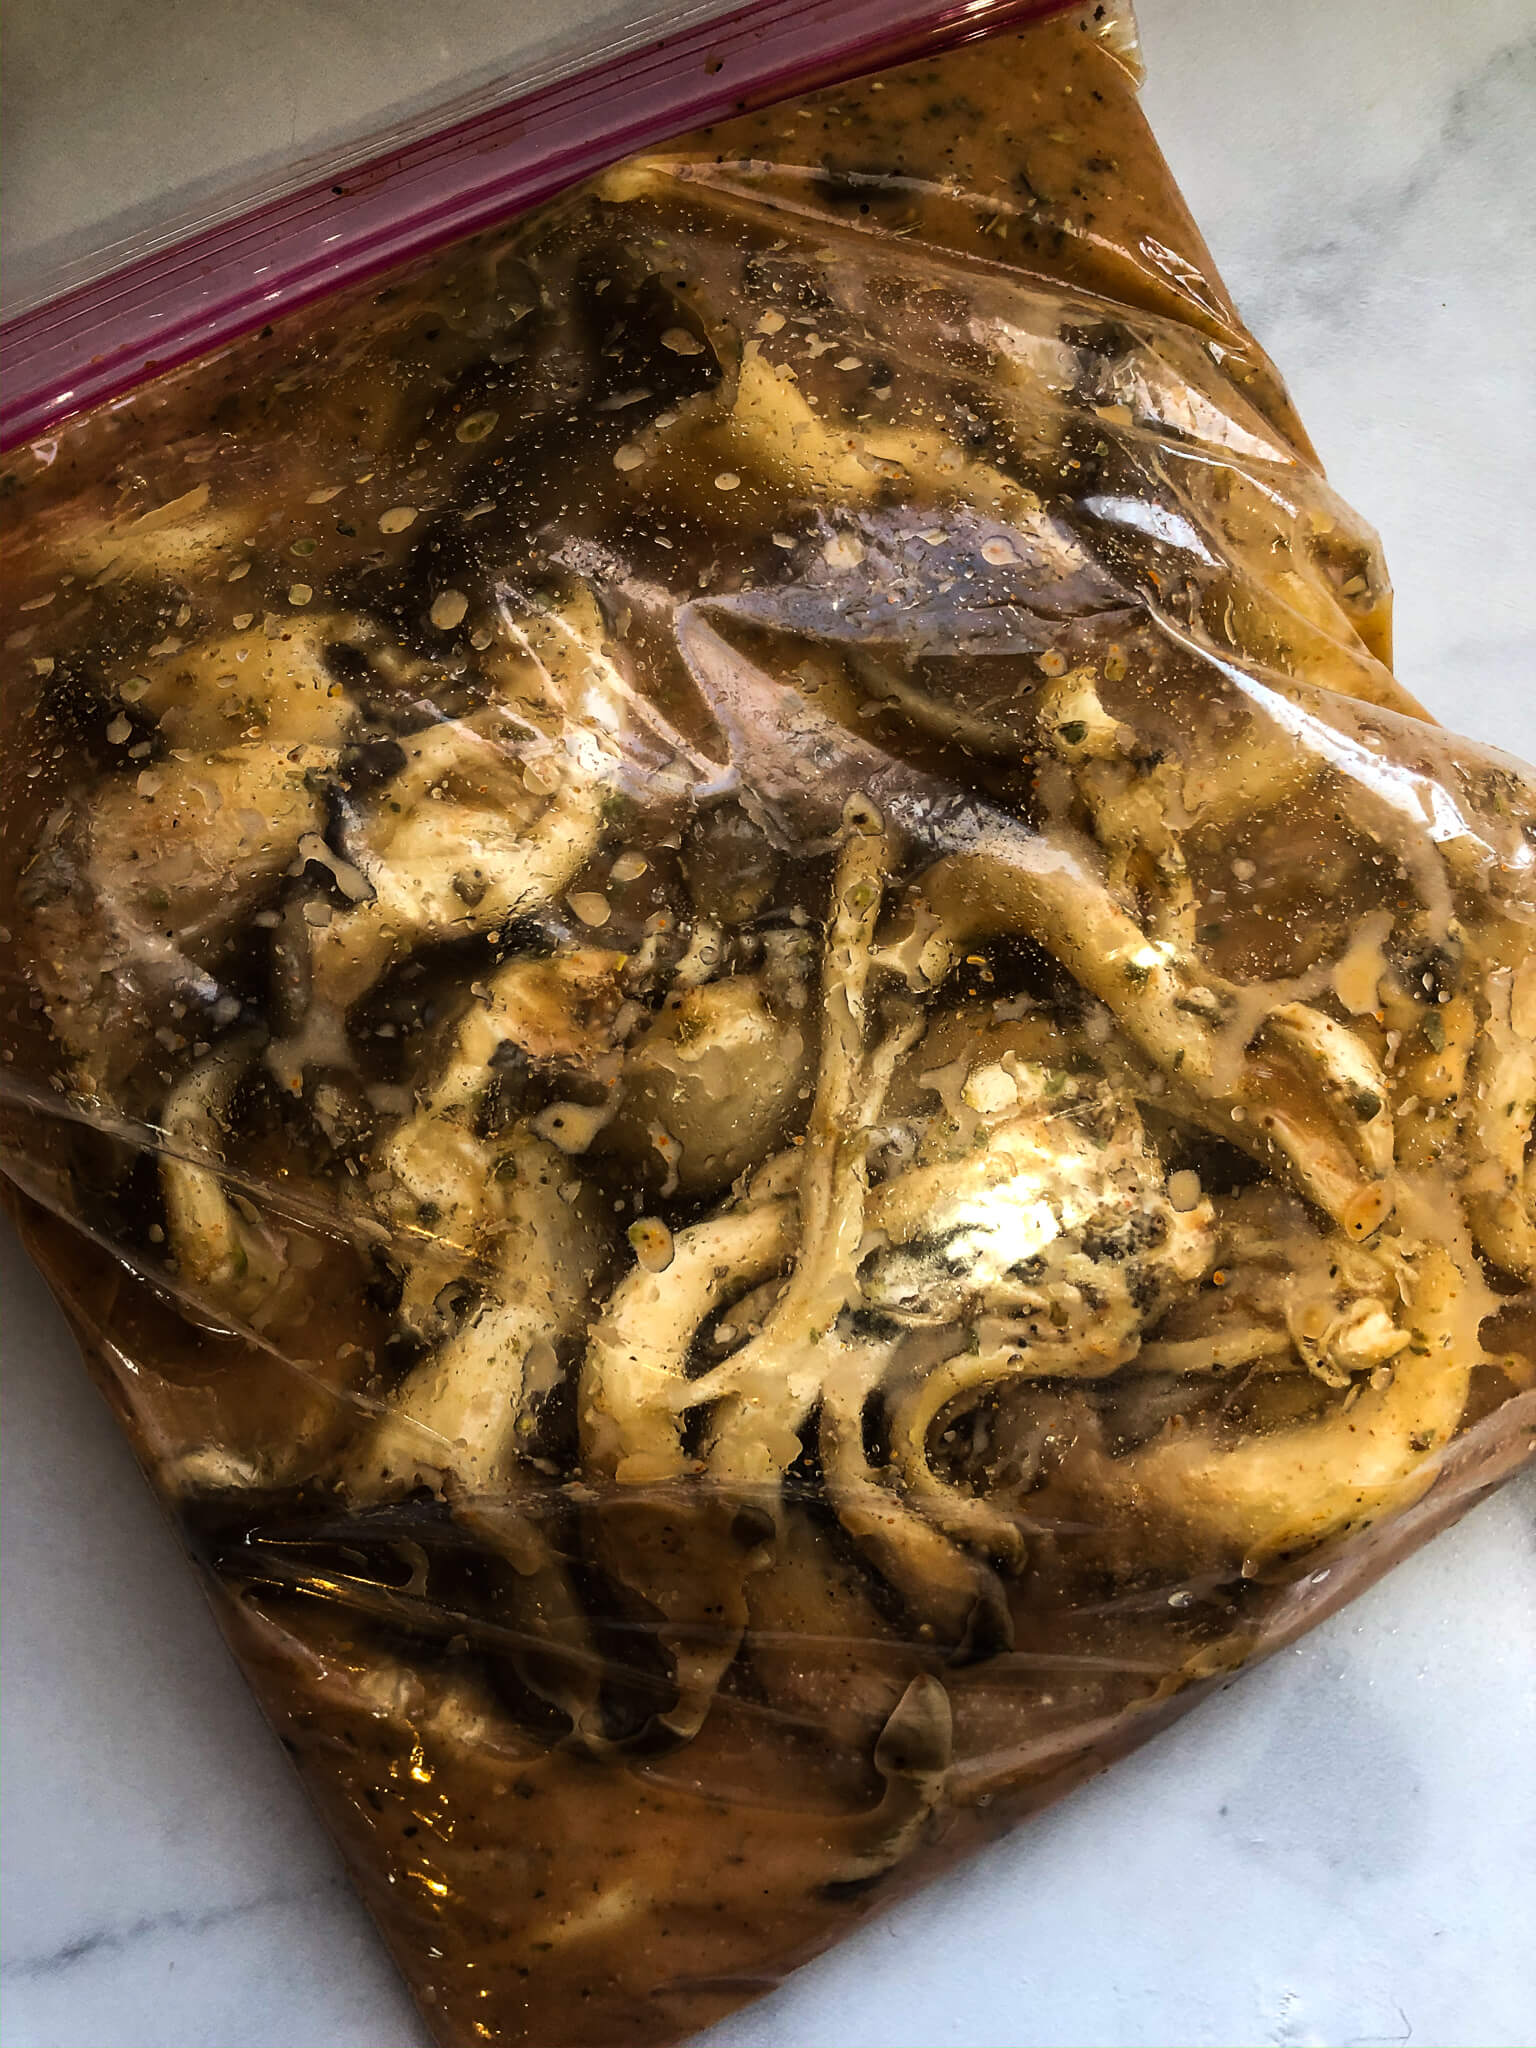 Oyster mushrooms in marinade